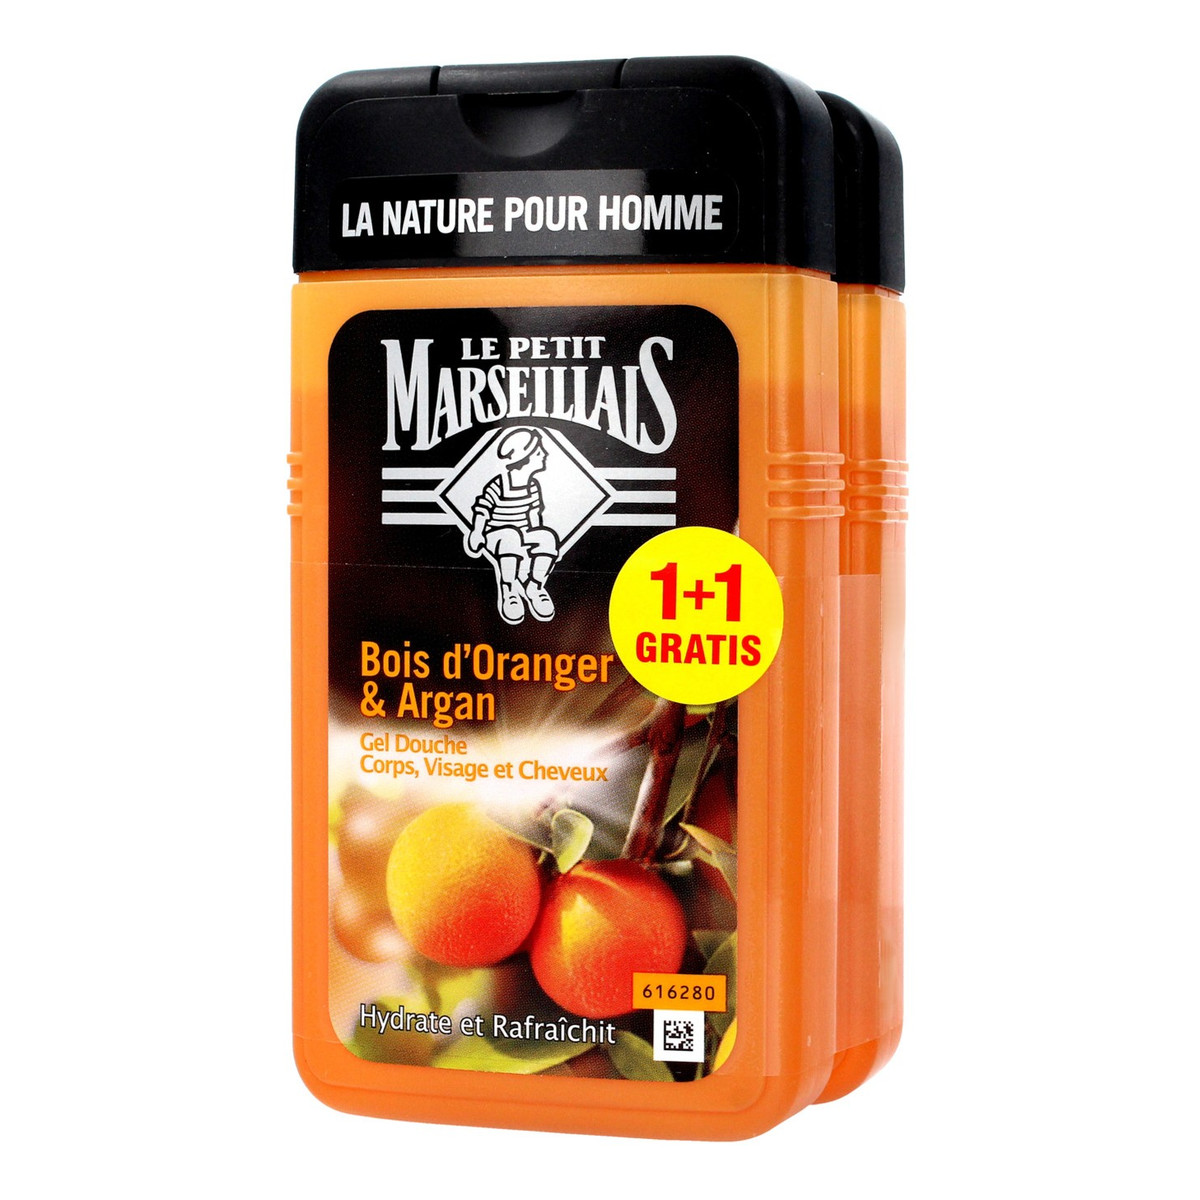 Le Petit Marseillais żel pod prysznic 3w1 dla mężczyzn Drzewo Pomarańczowe & Olej Arganowy 1+1 gratis 2x 250ml